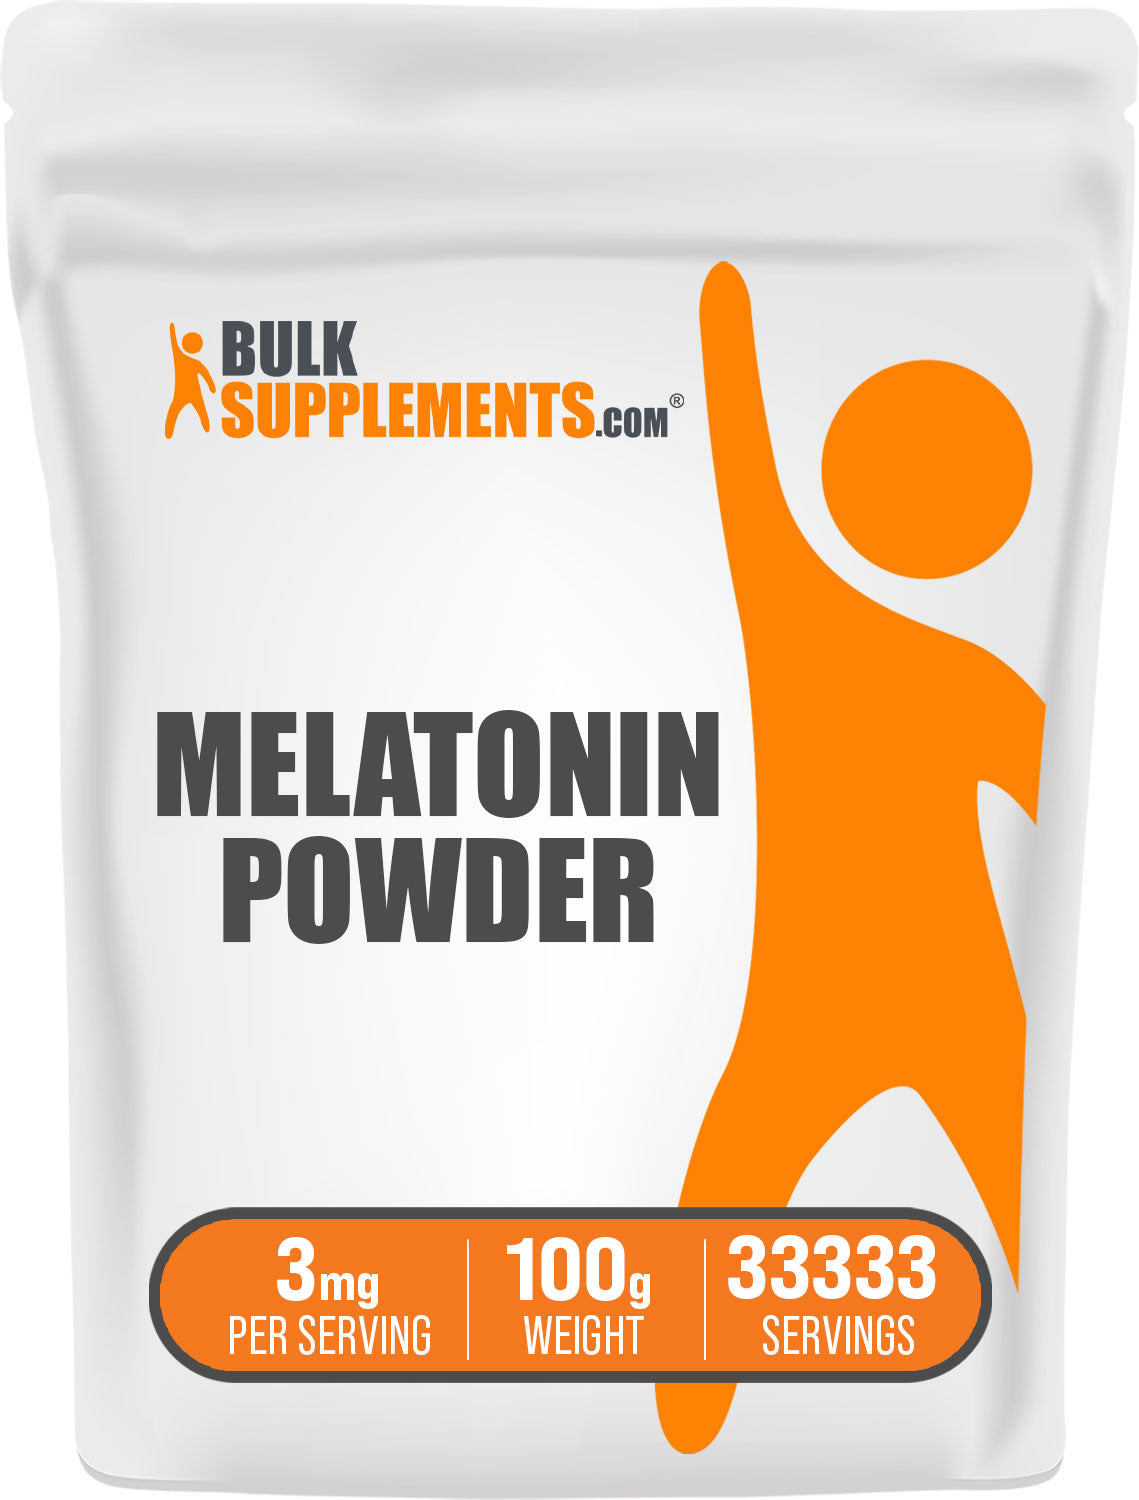 BulkSupplements Melatonin Powder 100g bag